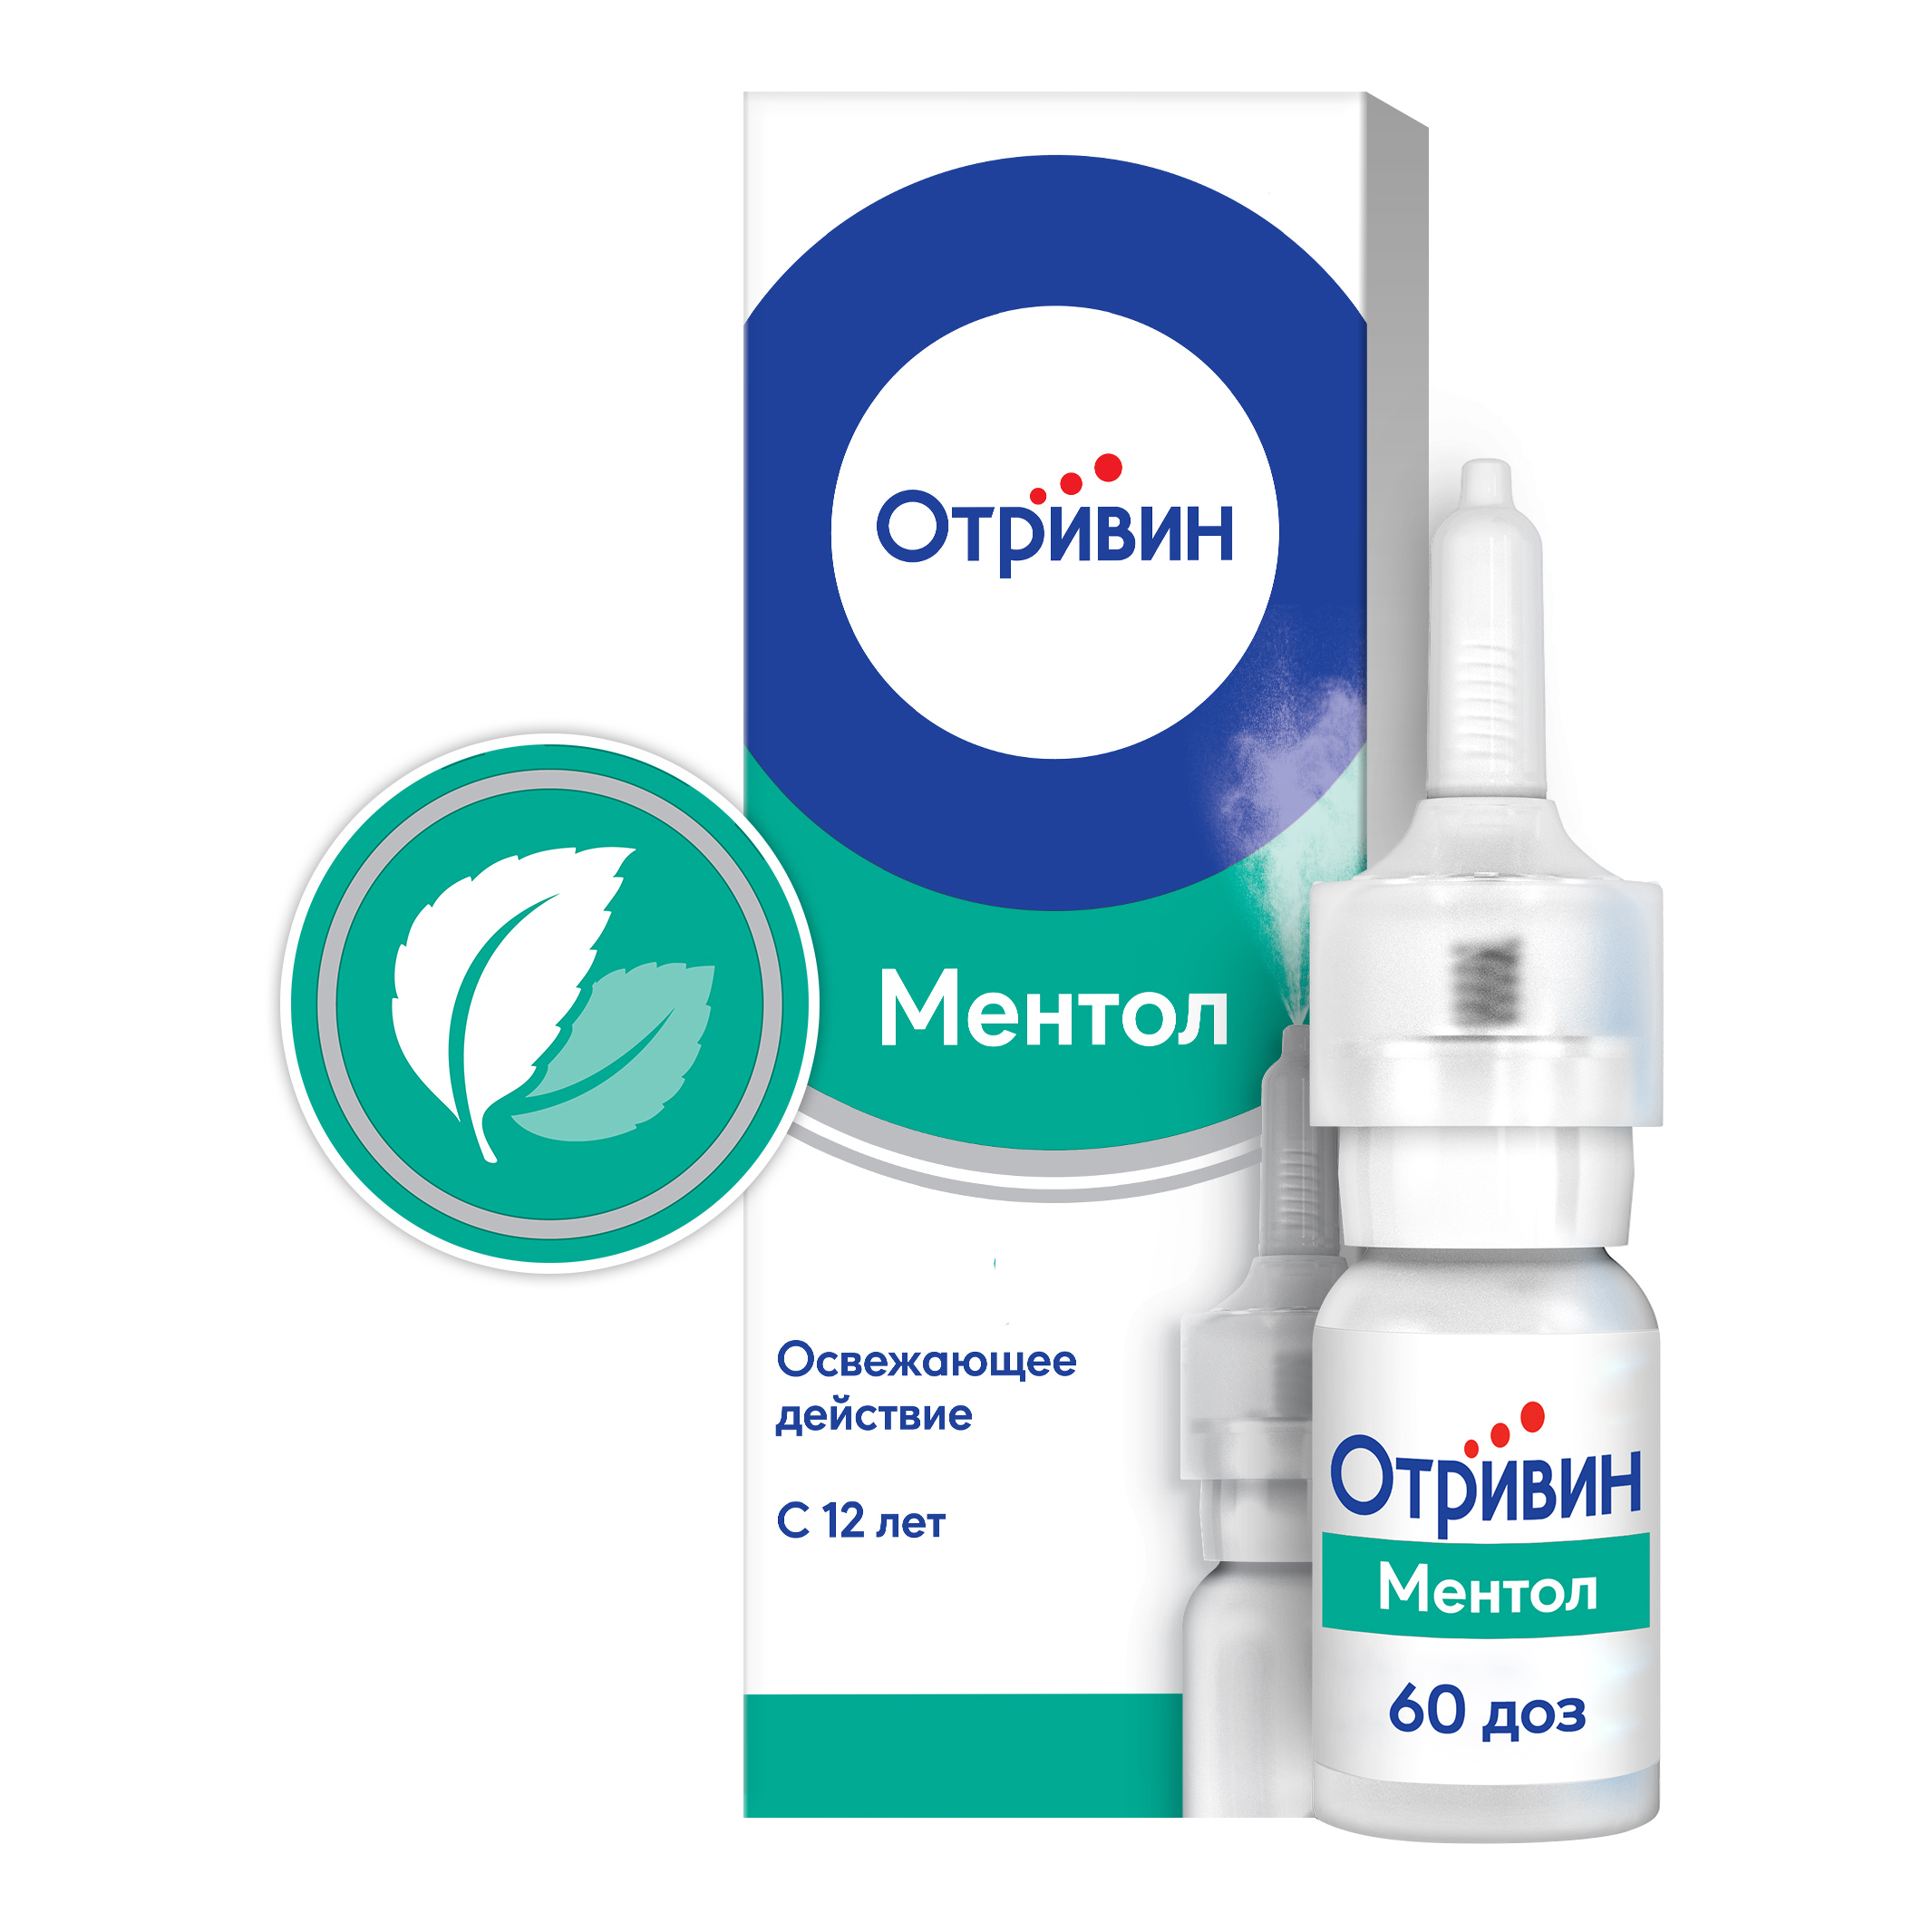 Отривин Ментол спрей для носа при насморке и заложенности носа, ксилометазолин 0,1%, 10 мл отривин экспресс спрей наз ментол 0 05% 10мл